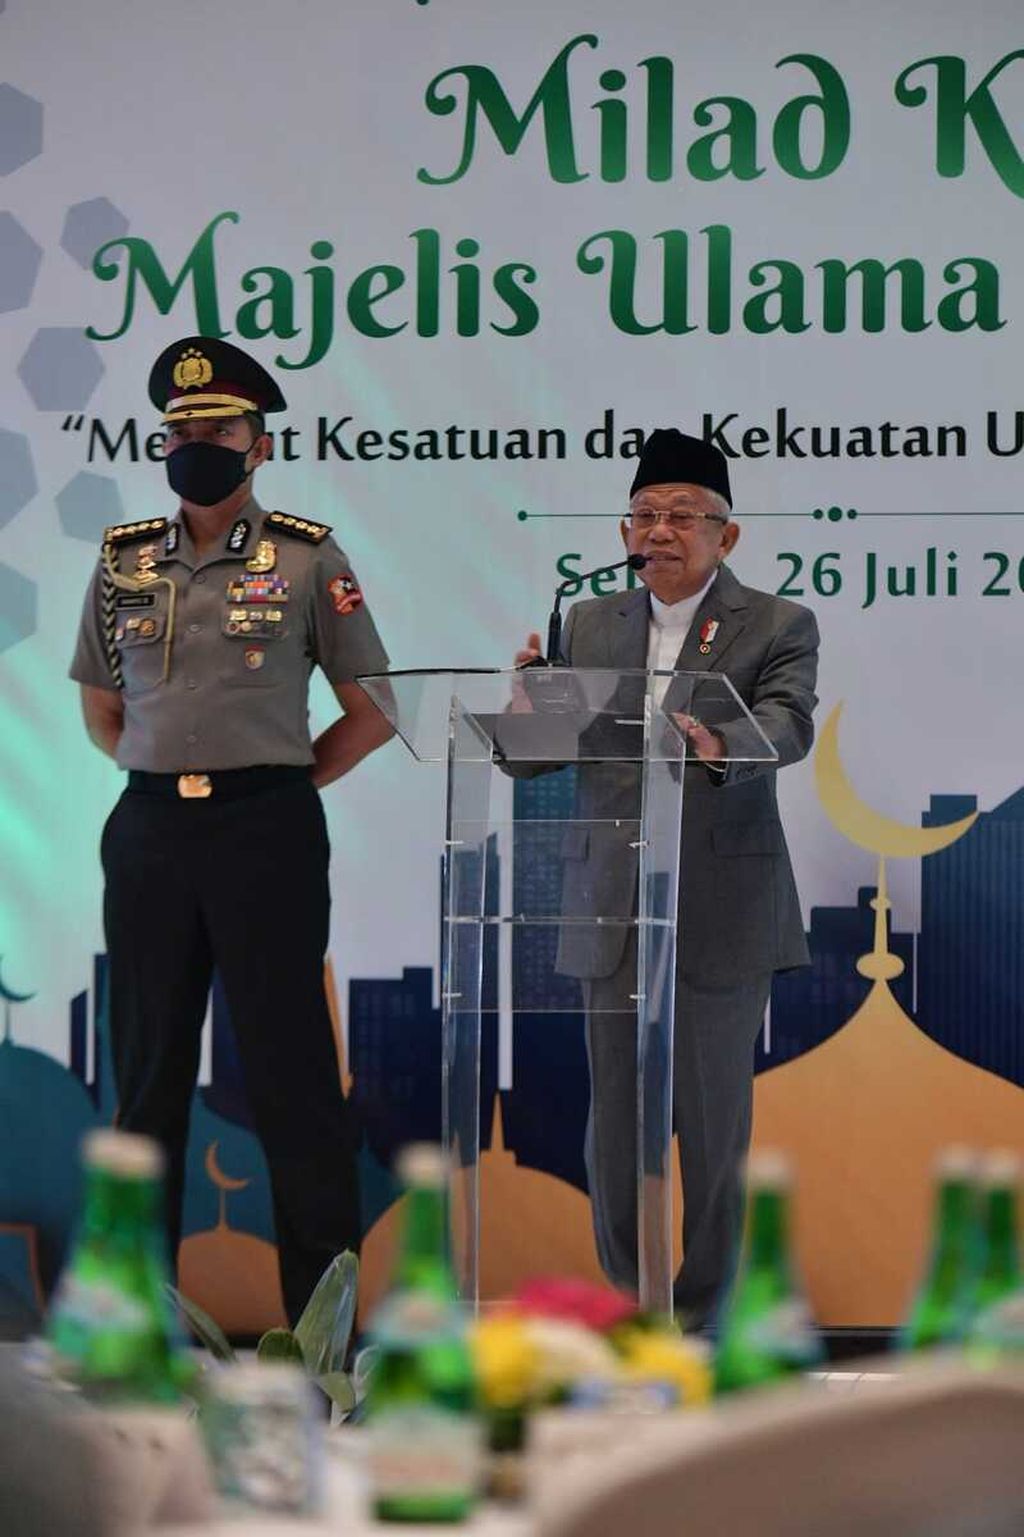 Wakil Presiden Ma'ruf Amin yang juga menjabat Ketua Dewan Pertimbangan Majelis Ulama Indonesia ketika hadir dalam milad MUI ke-47 dengan tema “Merajut Kesatuan dan Kekuatan Umat dalam Kebinnekaan” yang berlangsung secara daring maupun luring pada Kamis (26/7/2022) malam. 